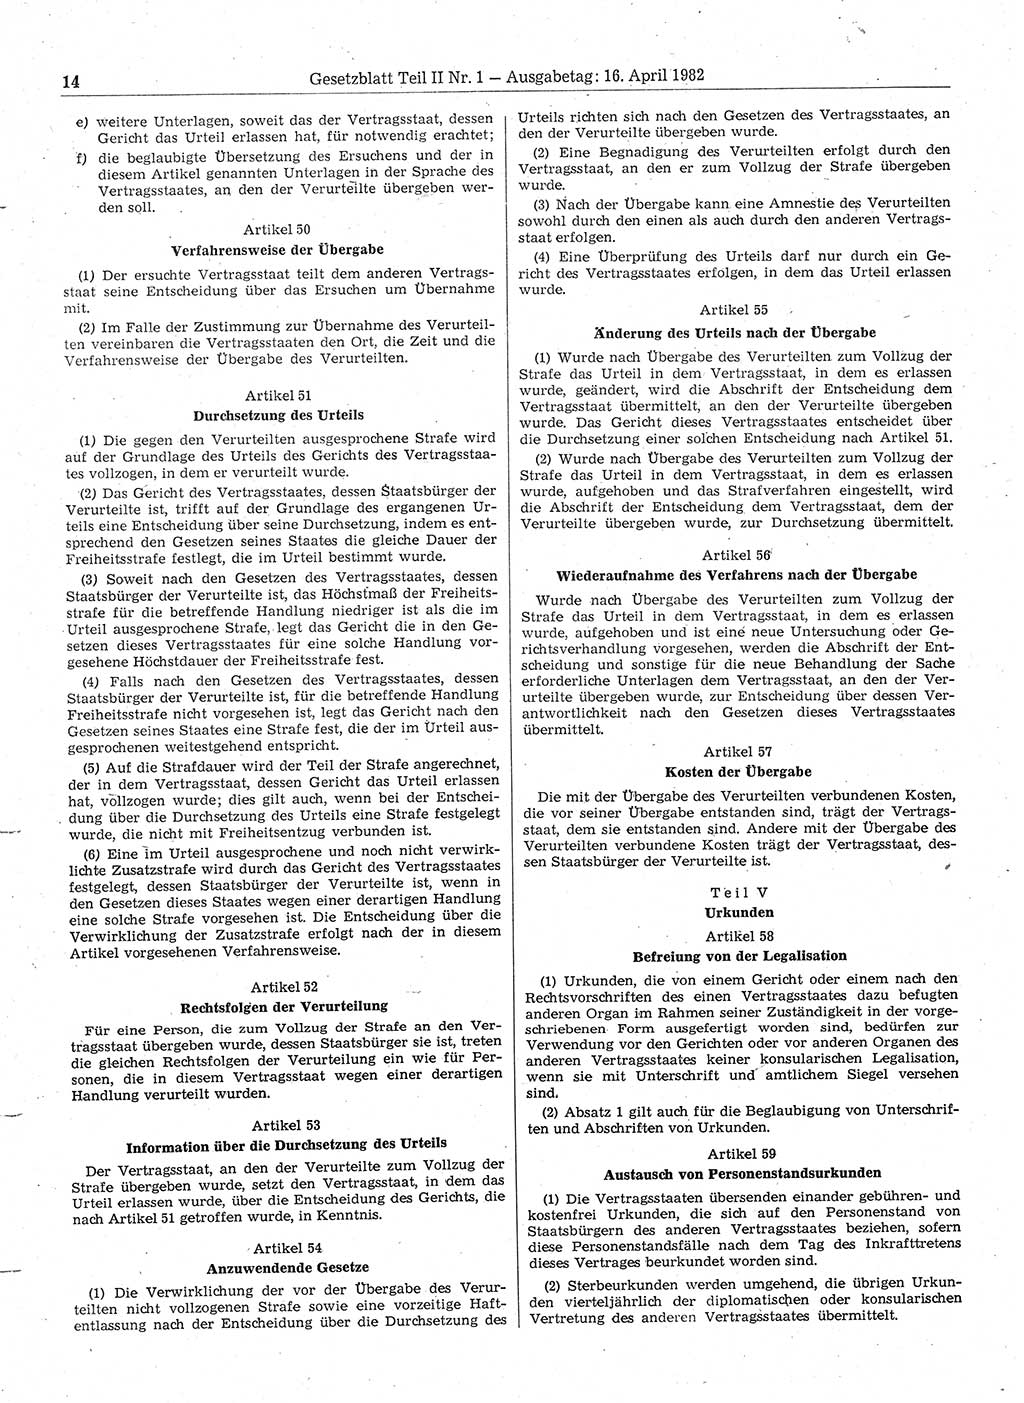 Gesetzblatt (GBl.) der Deutschen Demokratischen Republik (DDR) Teil ⅠⅠ 1982, Seite 14 (GBl. DDR ⅠⅠ 1982, S. 14)